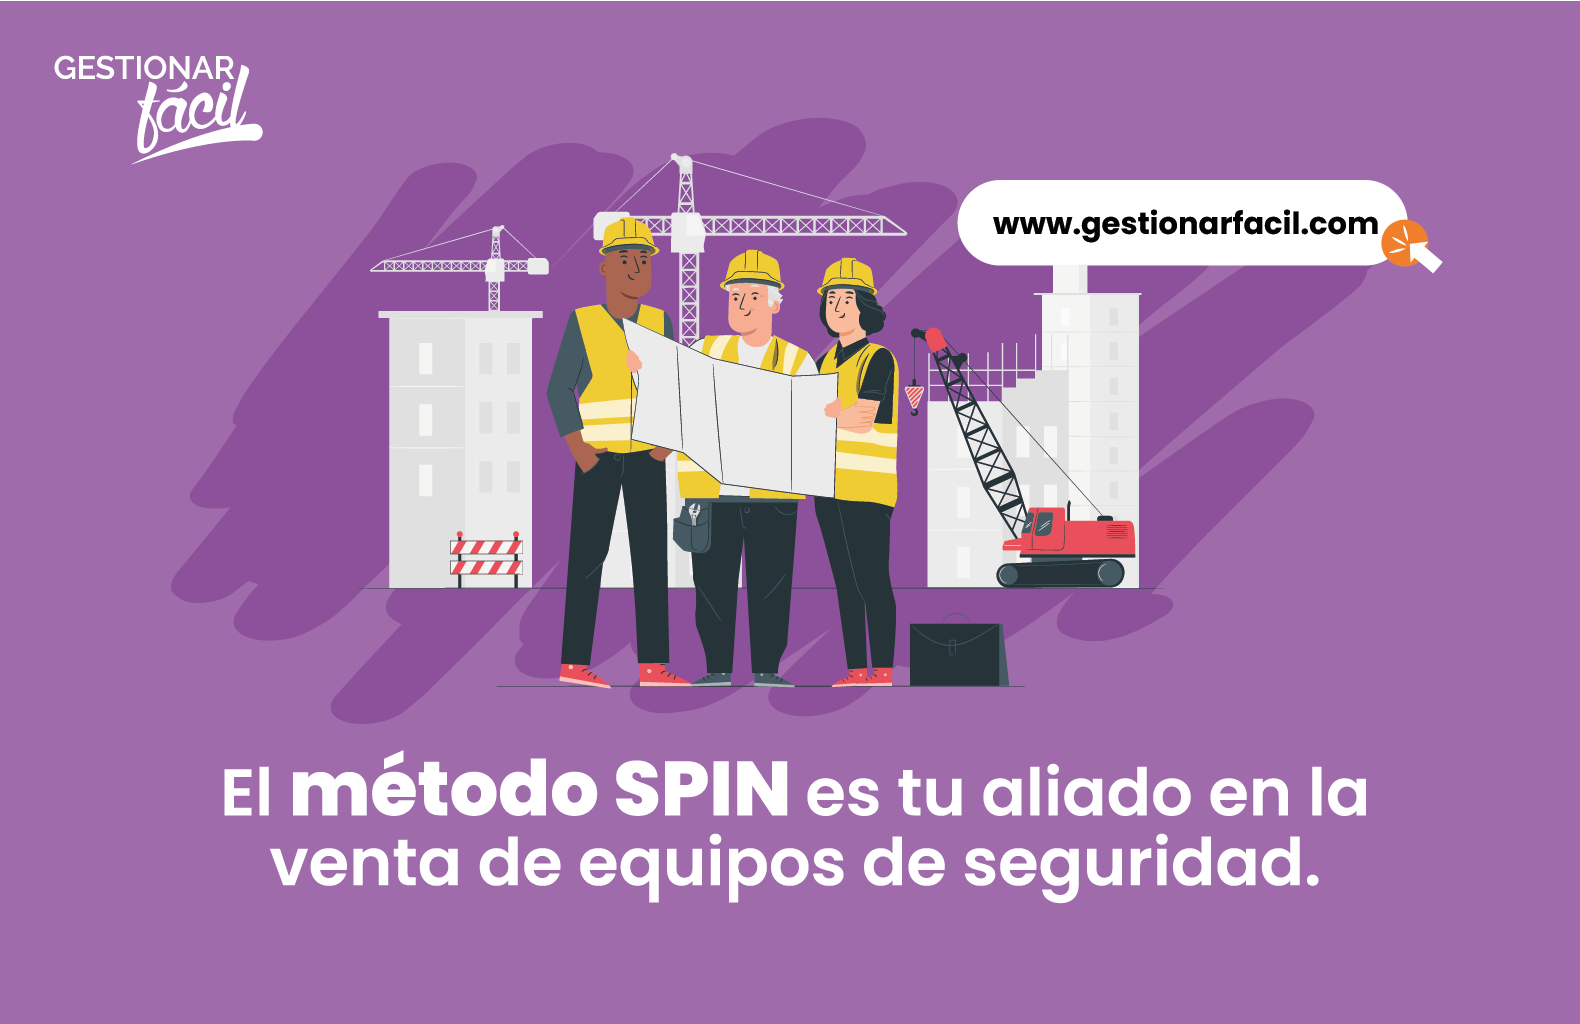 El método SPIN es tu aliado en la venta de equipos de seguridad.